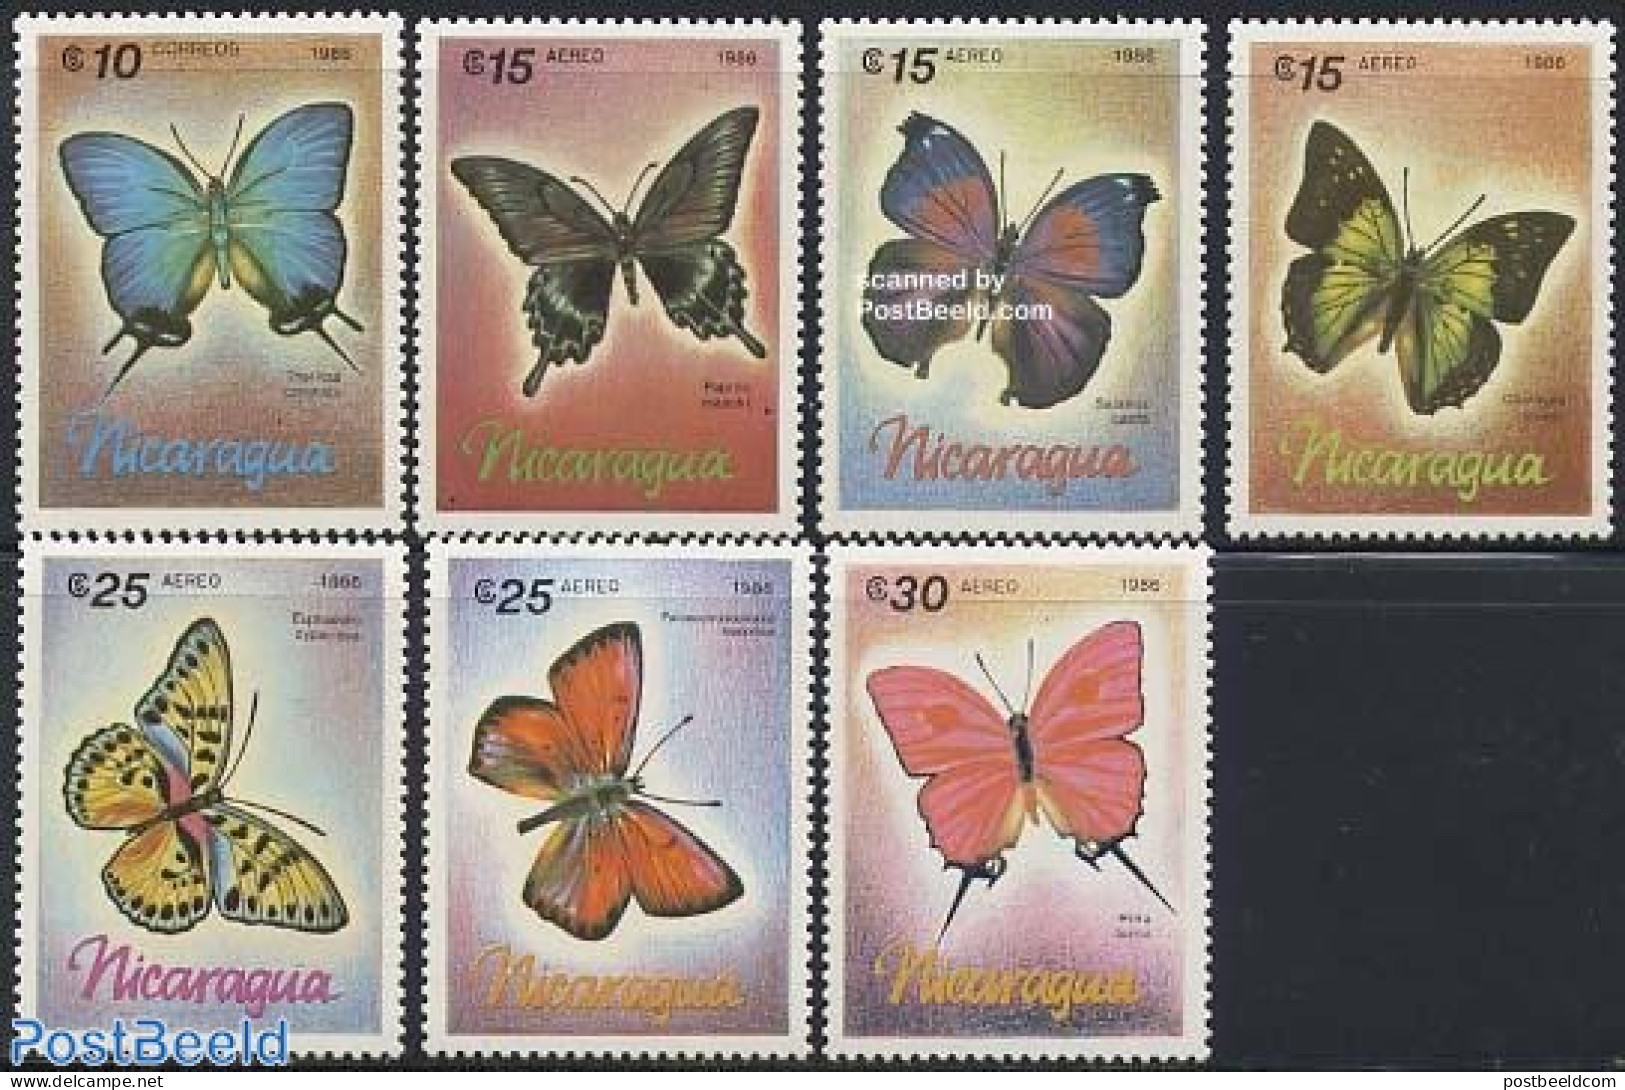 Nicaragua 1986 Butterflies 7v, Mint NH, Nature - Butterflies - Nicaragua